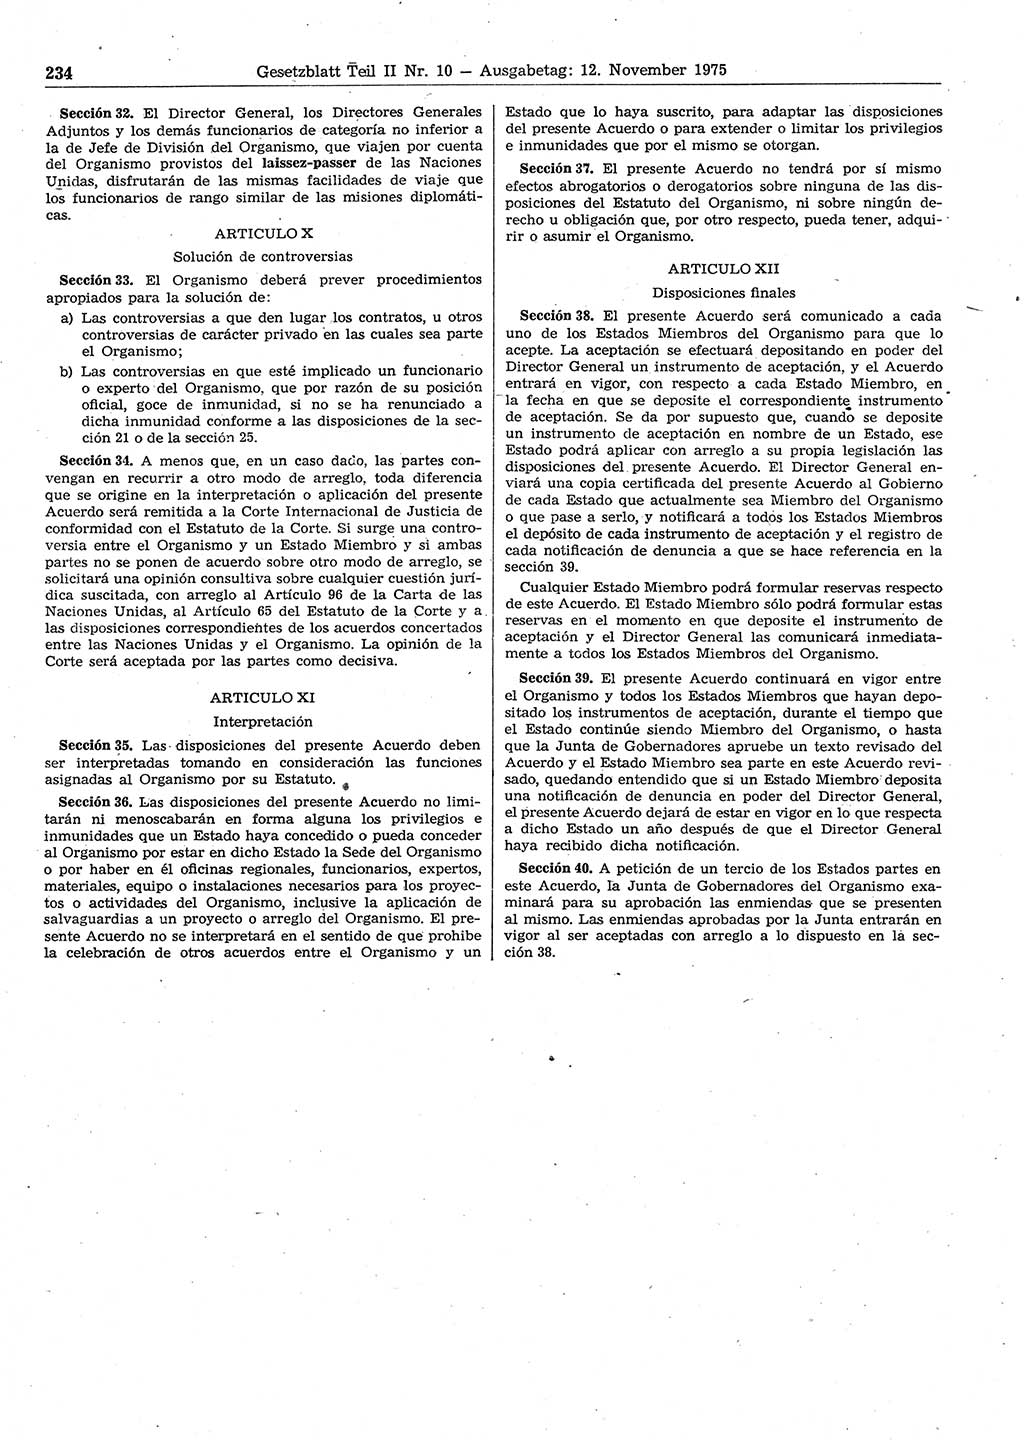 Gesetzblatt (GBl.) der Deutschen Demokratischen Republik (DDR) Teil ⅠⅠ 1975, Seite 234 (GBl. DDR ⅠⅠ 1975, S. 234)